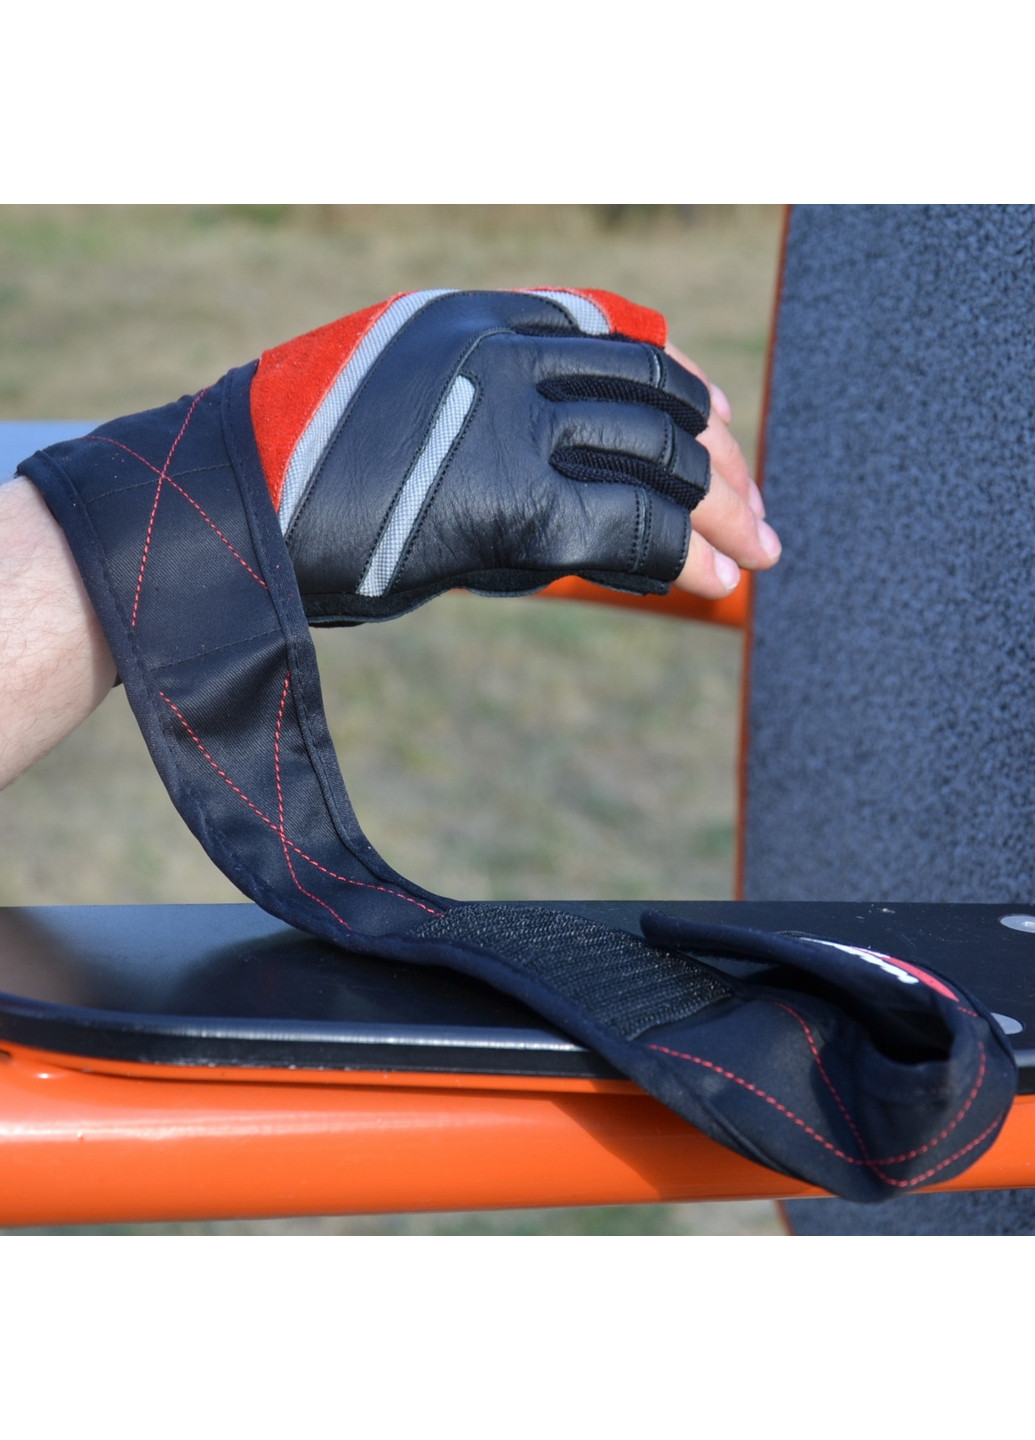 Унисекс перчатки для фитнеса XL Mad Max (267654609)